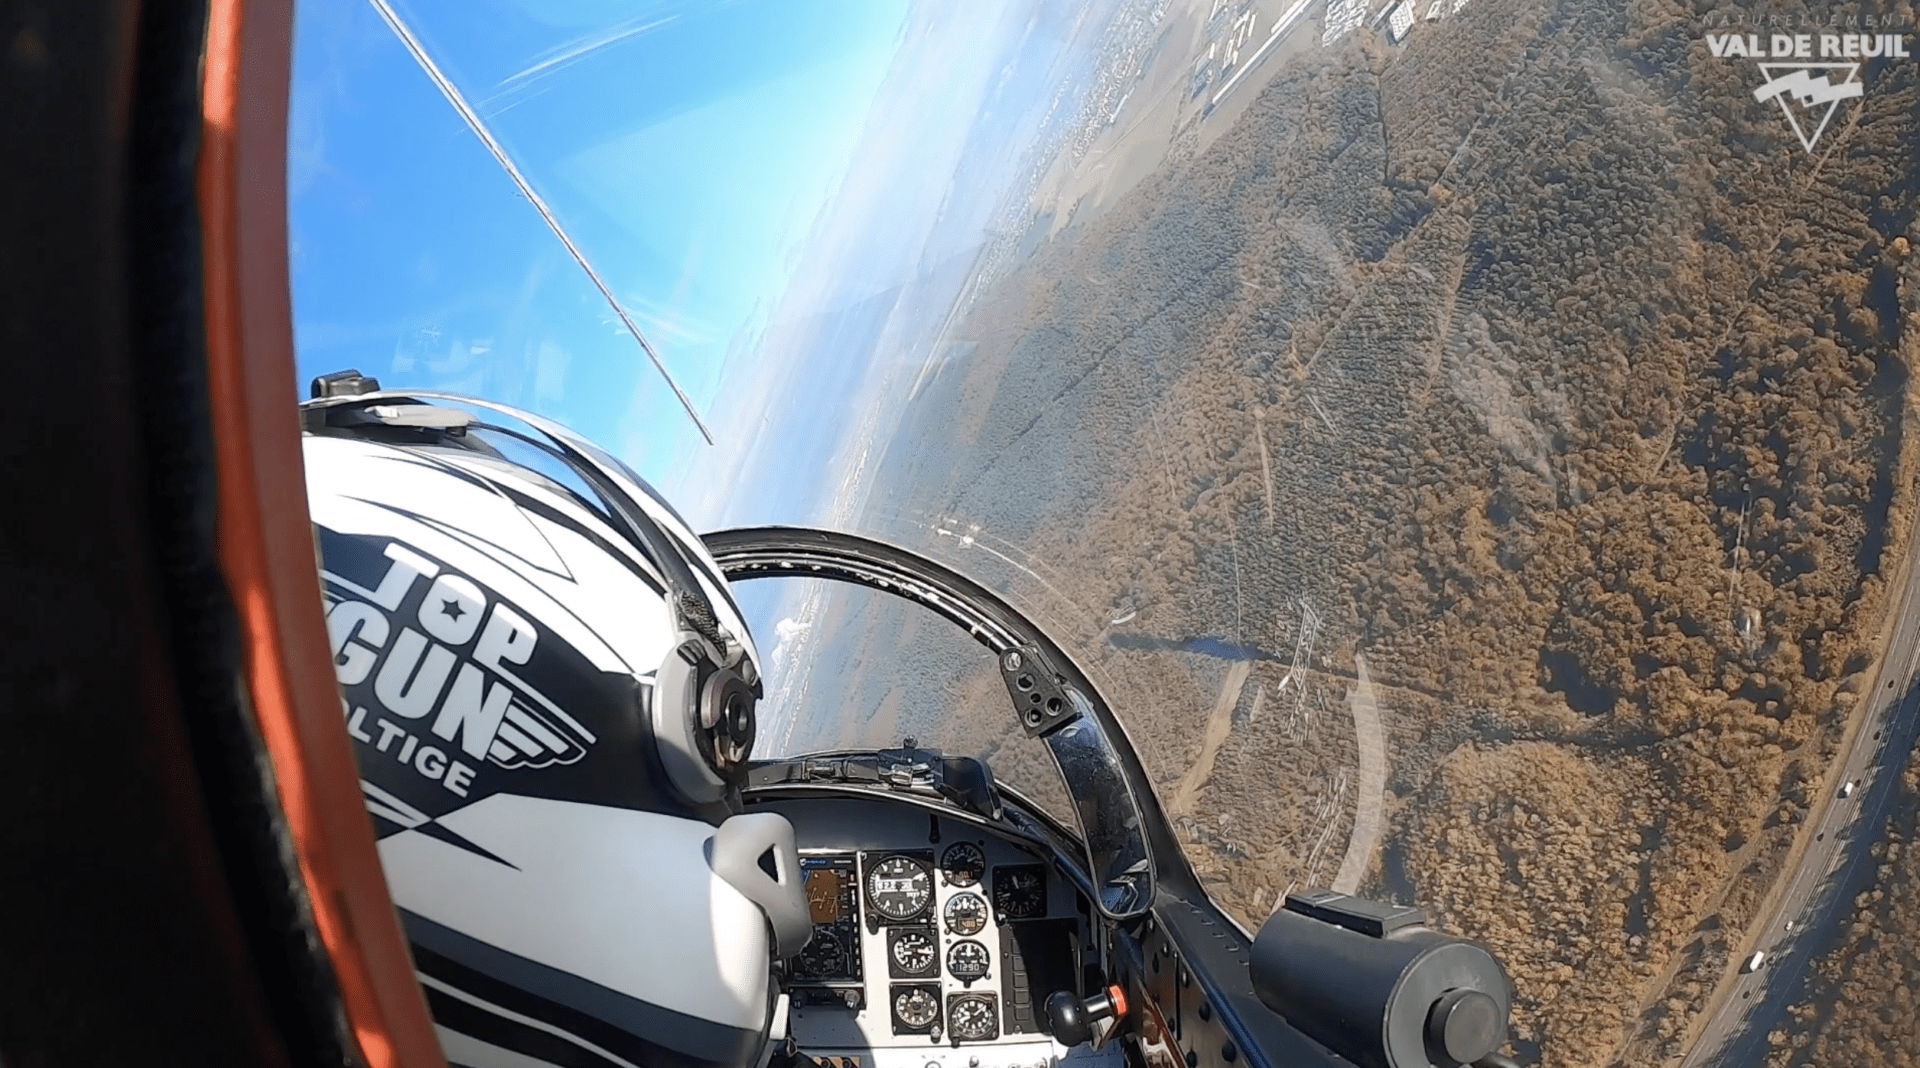 11 novembre 2021 : Voltige aérienne dans le ciel rolivalois (vidéo)